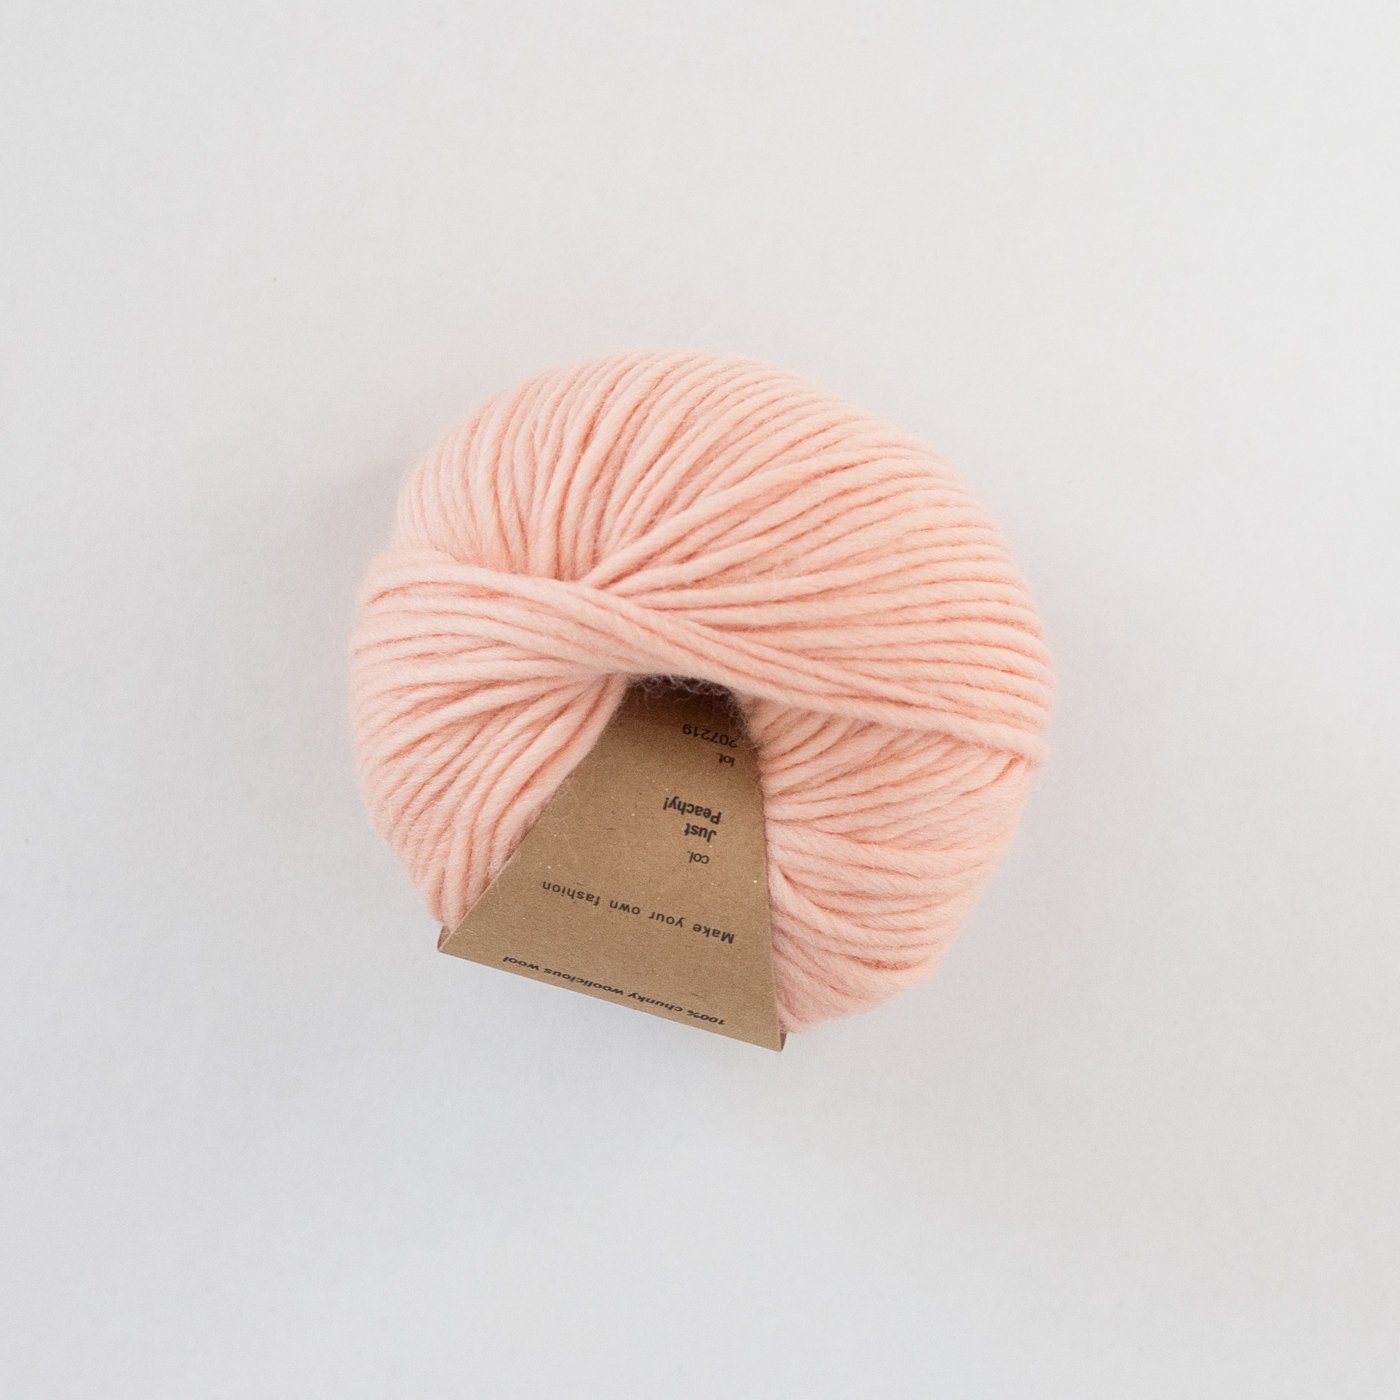 peach yarn online shop - Just Peachy Hip Wool yarn | Peach yarn | Pure wool - by HipKnitShop - 09/09/2018